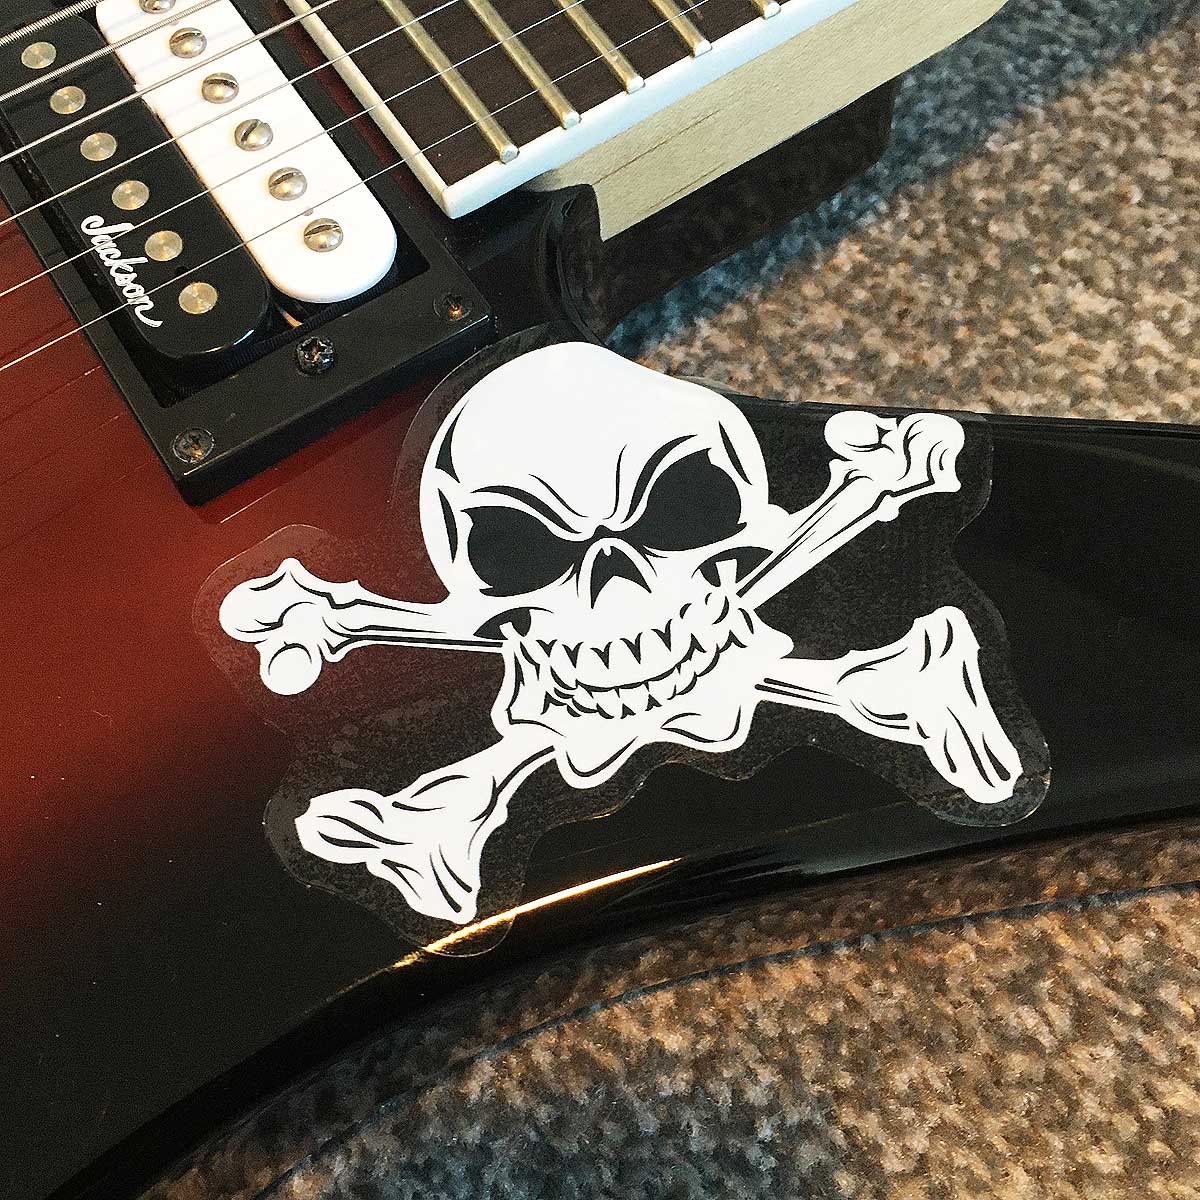 Skull and Crossbones Guitar Sticker